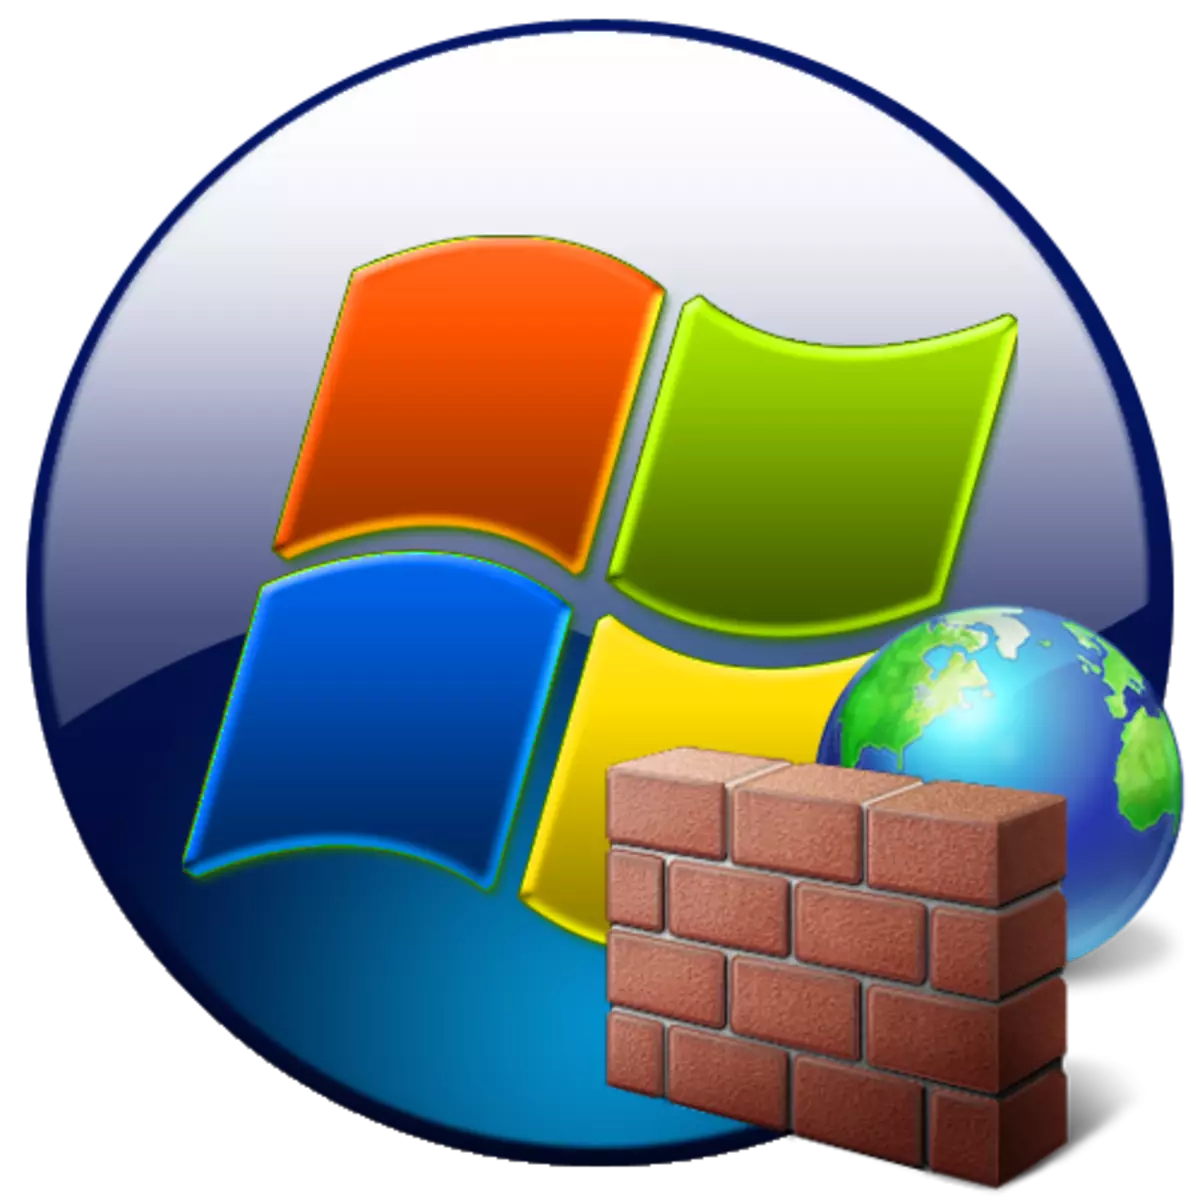 Windows 7деги брандмауэр иштетүү